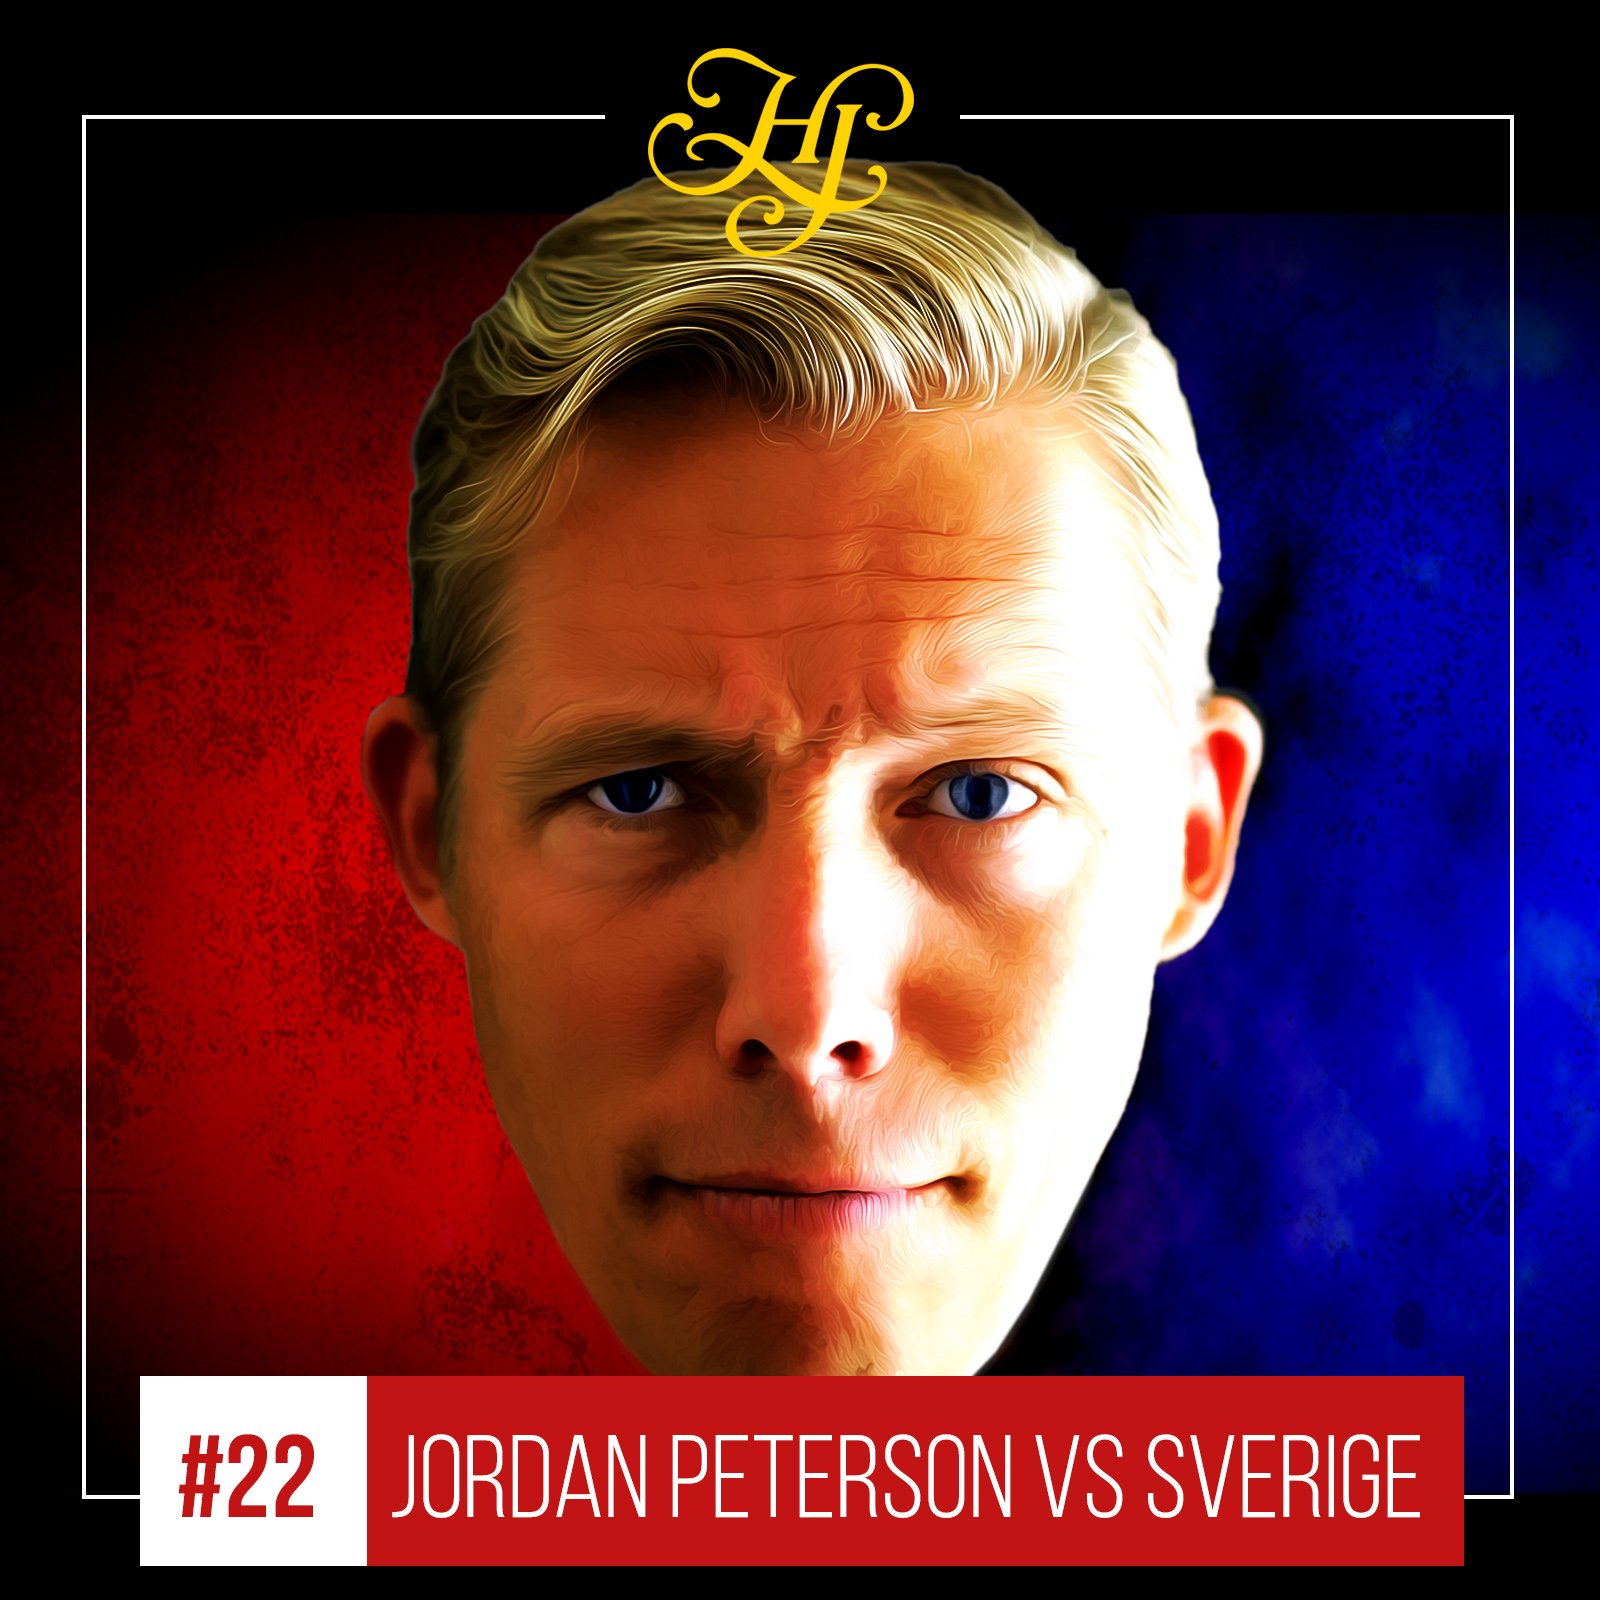 Mansion Rød dato Men Henrik Jönsson on Twitter: "🎙Jordan B Peterson vs Sverige - PODDVERSION  Lyssna på min dekonstruktion av samtalet mellan Jordan B Peterson, Skavlan  och Annie Lööf. 🎵 iTunes: https://t.co/b8X4kJk1Ql 💚 Spotify:  https://t.co/yGYYL8EkkG 🎥